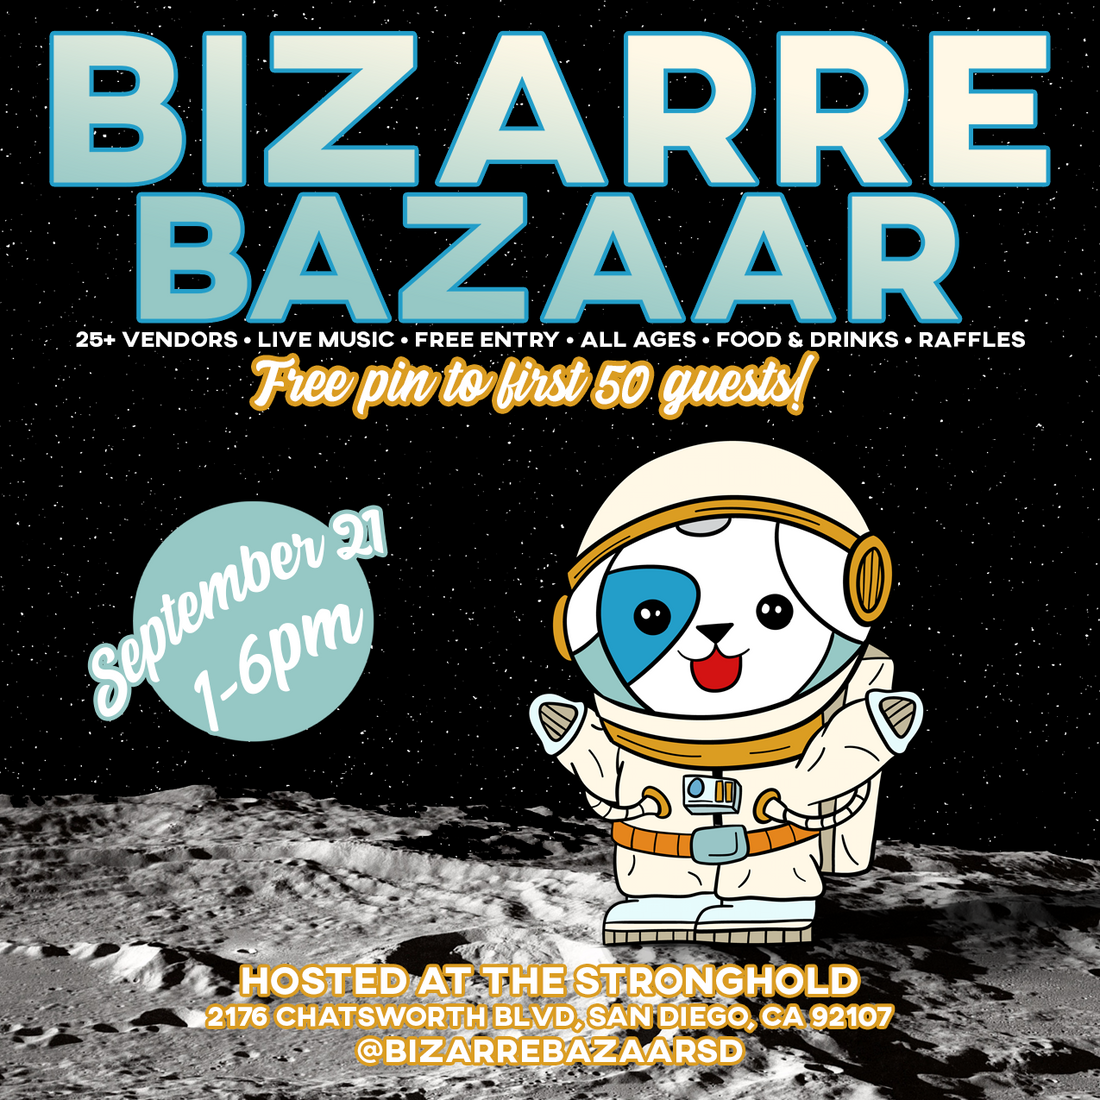 September's Bizarre Bazaar